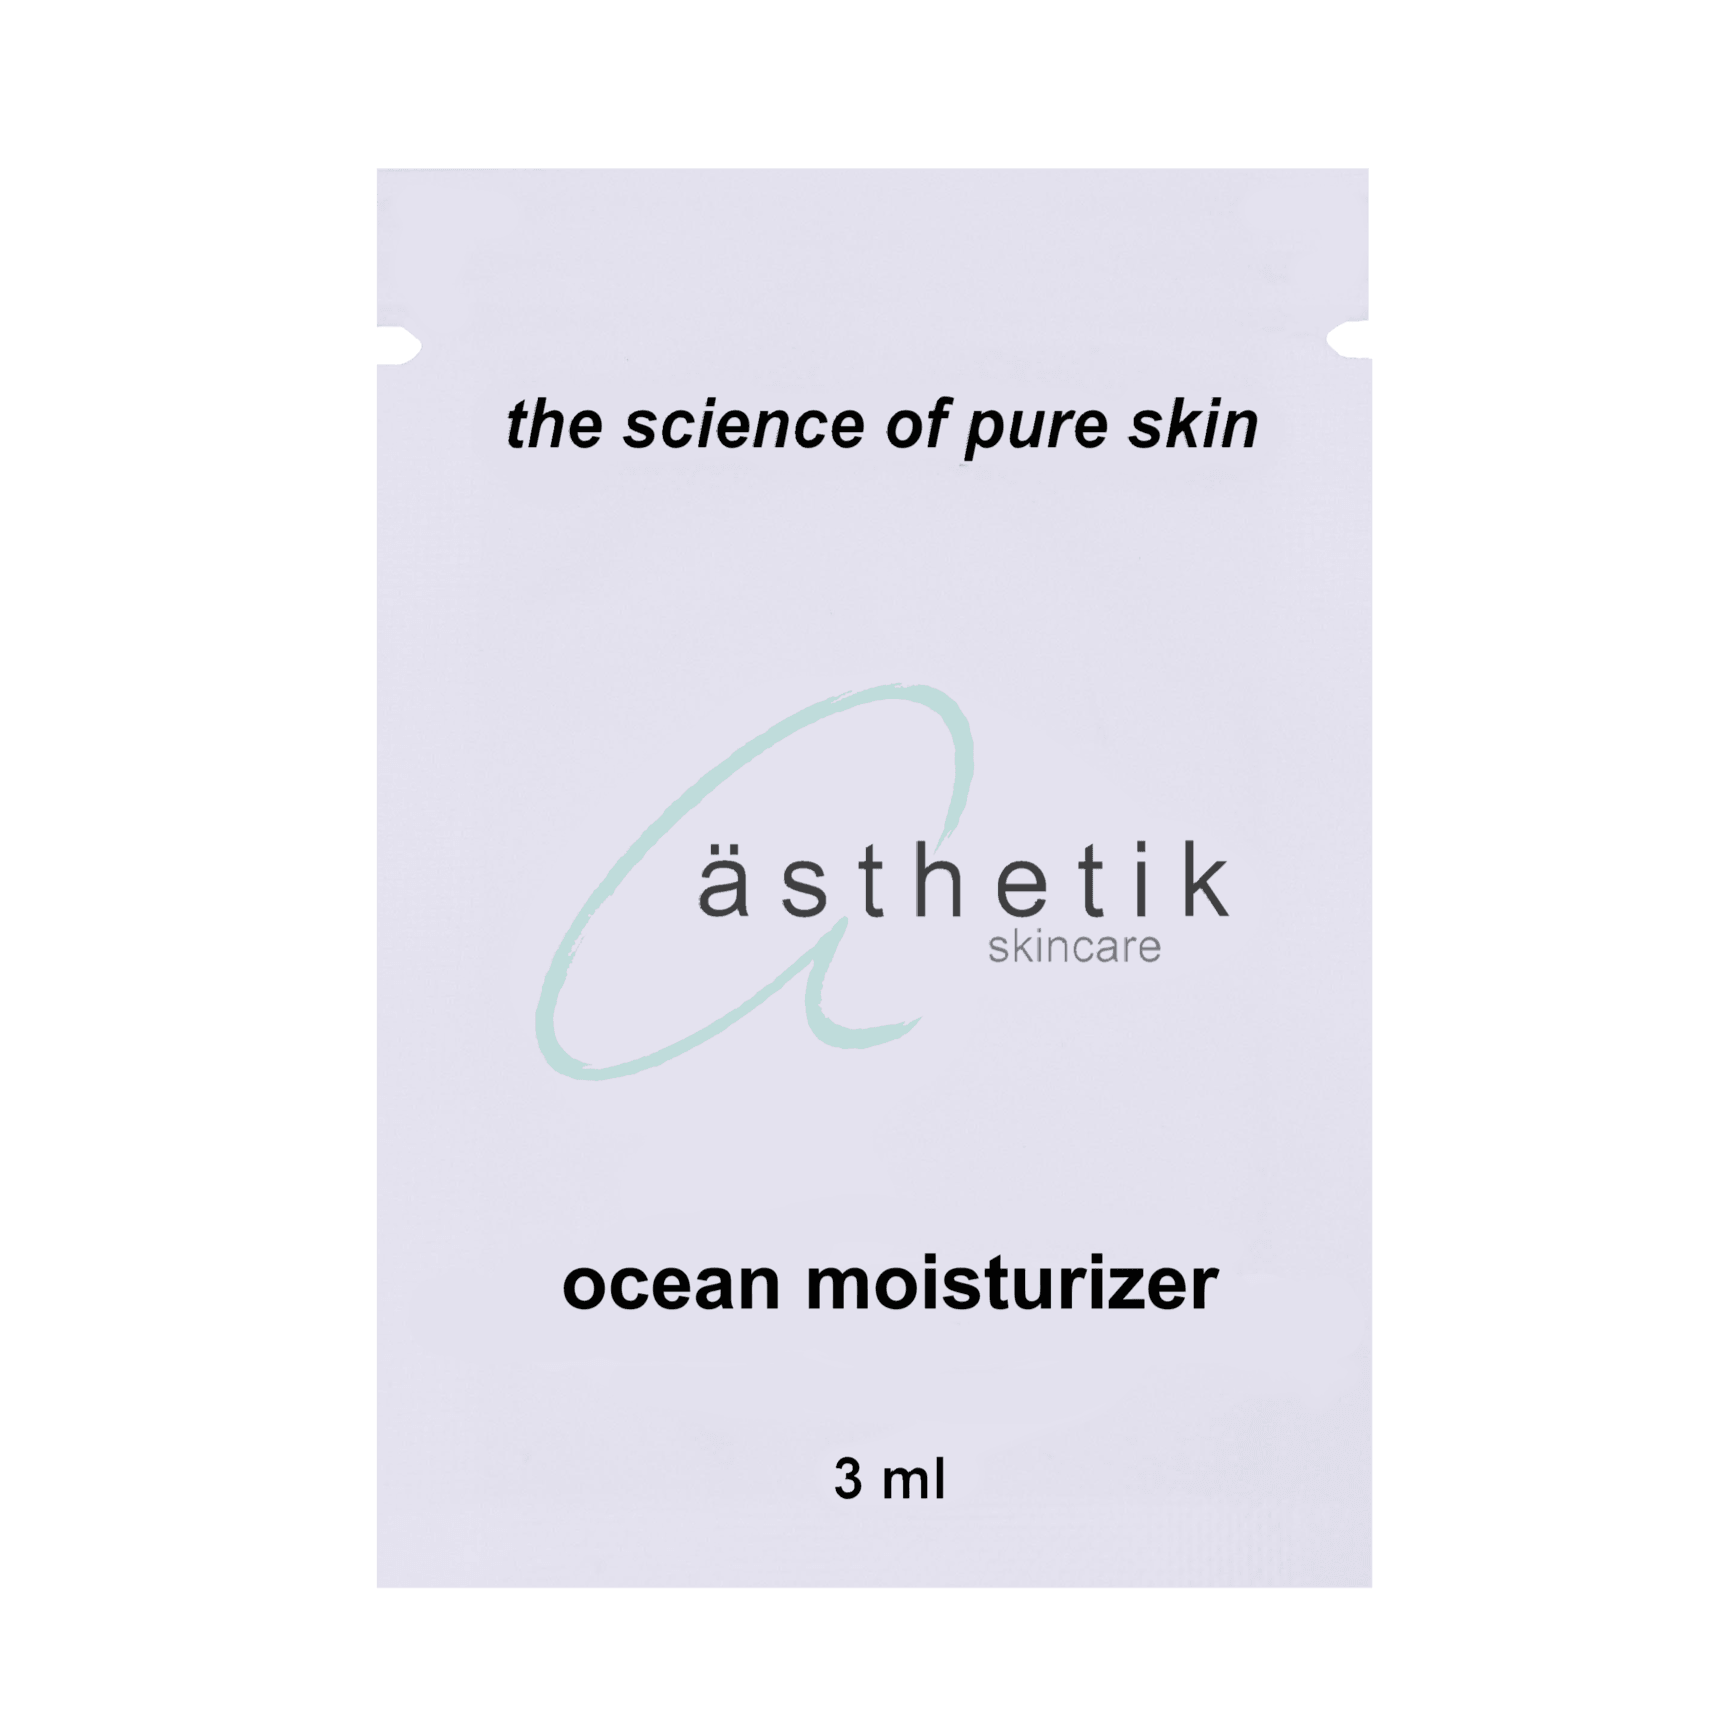 ocean moisturizer sample - ästhetik skincare - sample